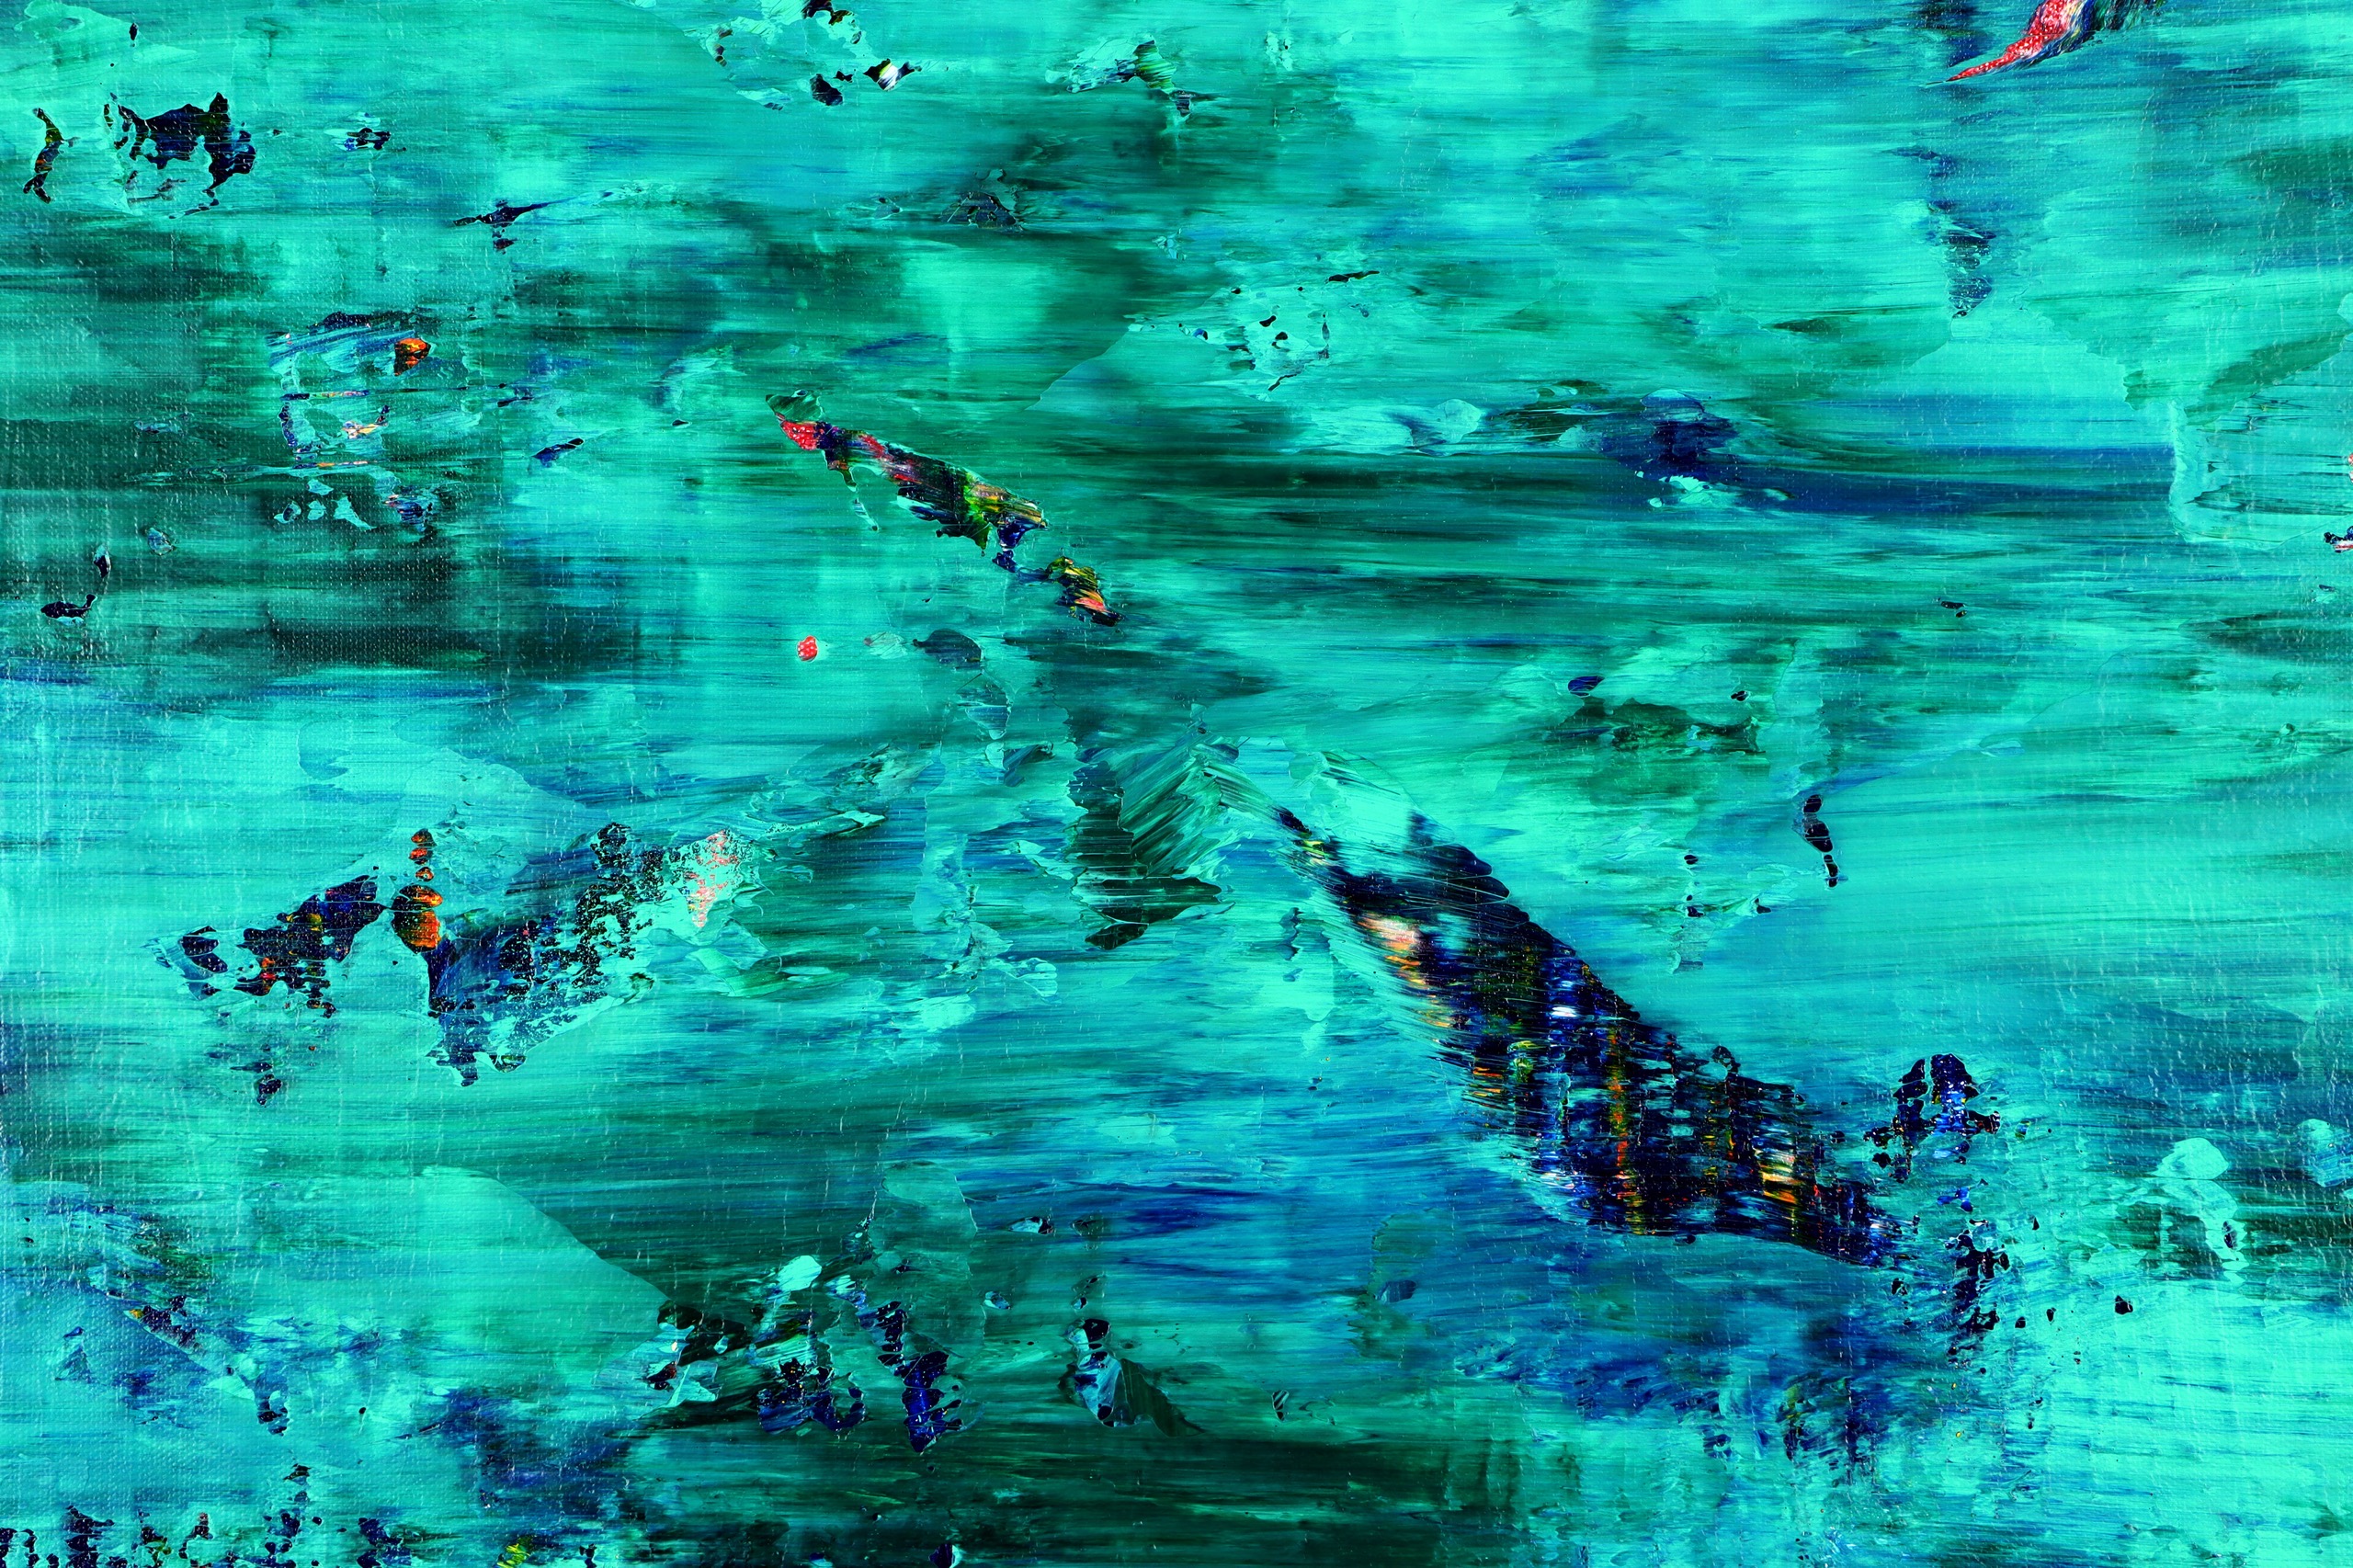 Deep Blue Paradise (2022) 36 x 48 inches / (DETAIL)